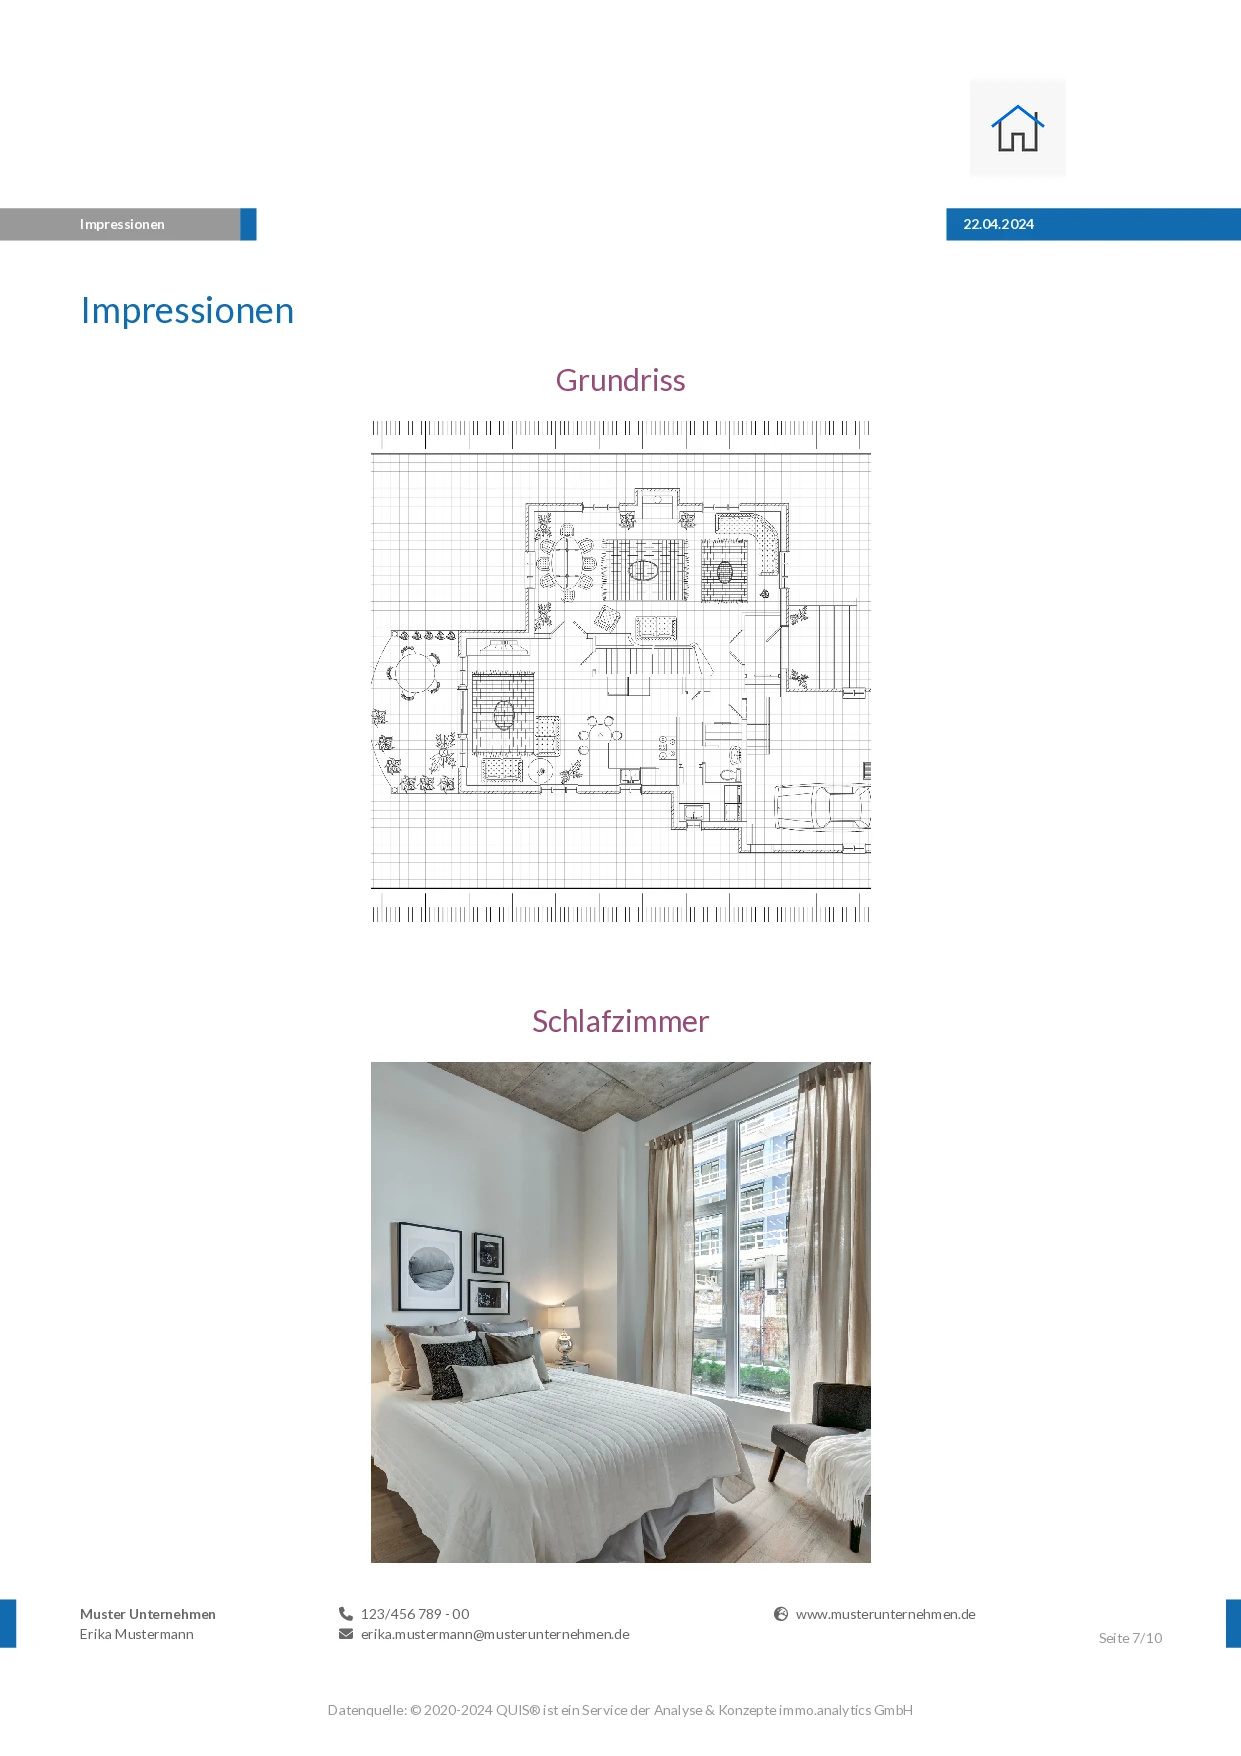 Immobilien-Exposé mit Objektbild sowie Objekt- und Lagebeschreibung